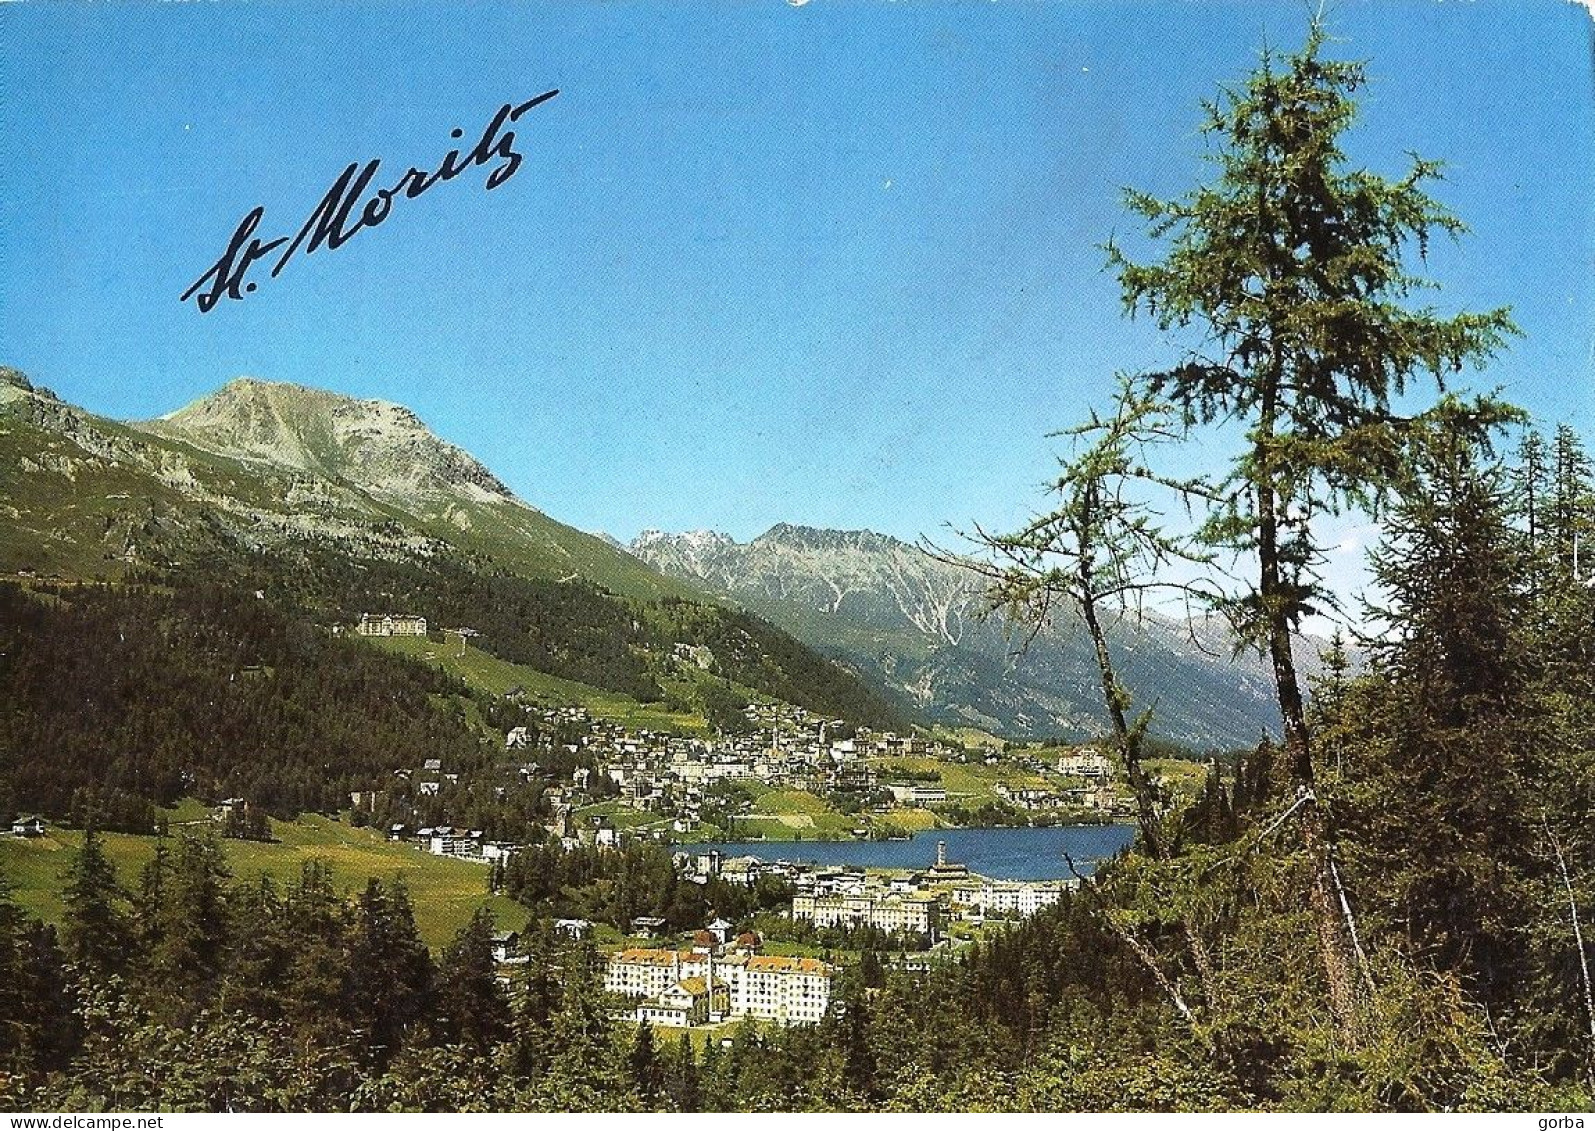 *CPM - SUISSE - GRISONS - St MORITZ - Engadin - Saint-Moritz